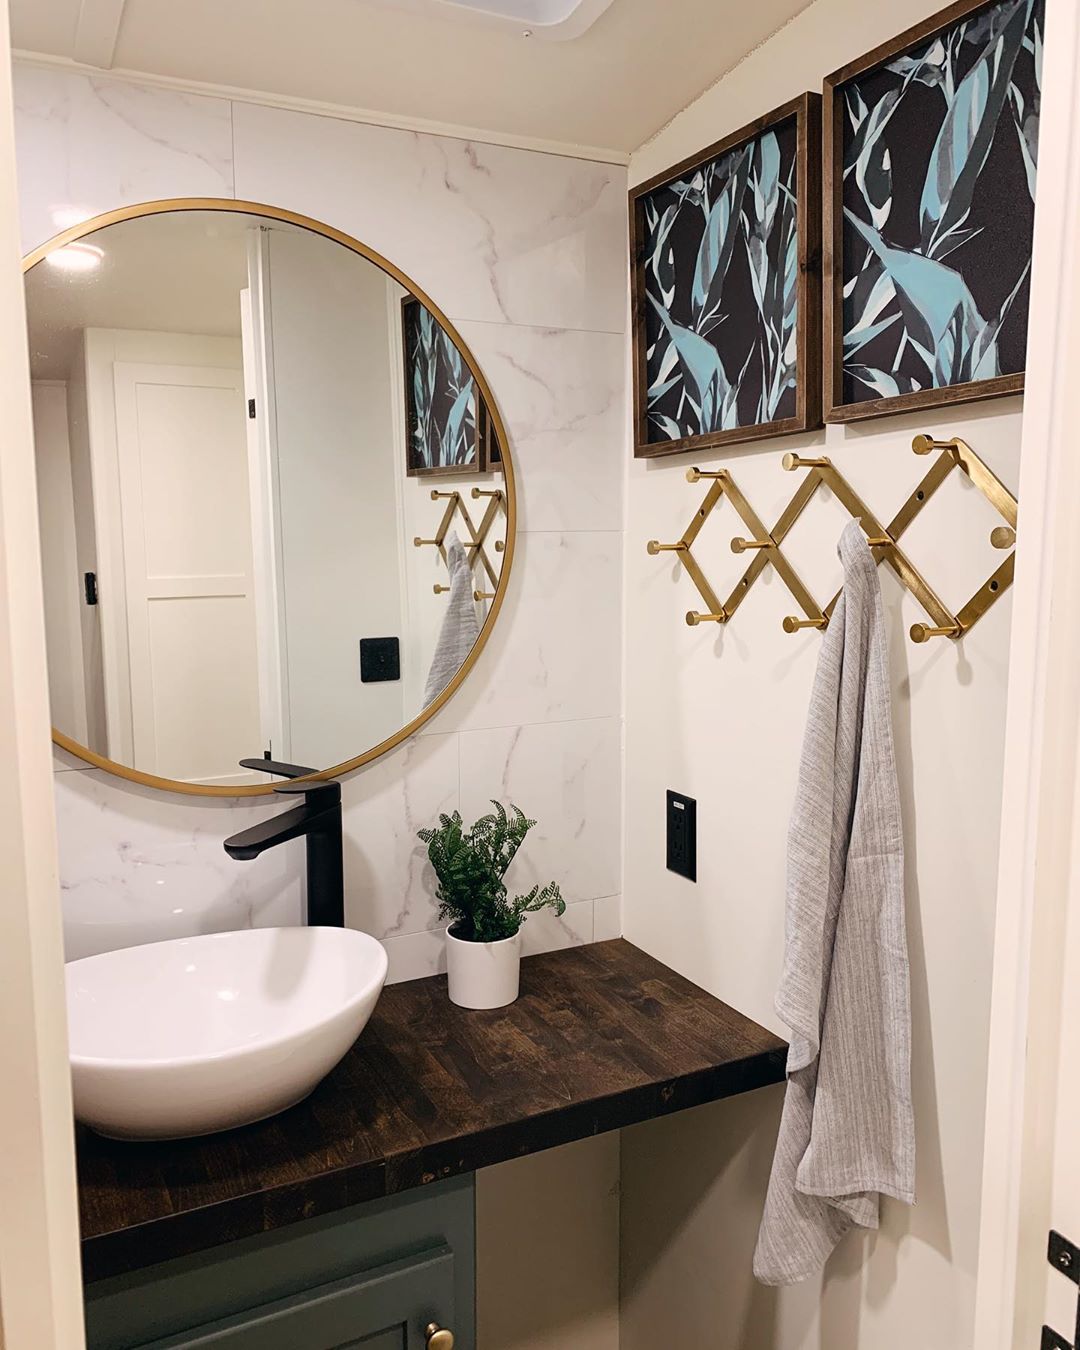 new bathroom vanity and mirror in RV photo by Instagram user @karleemmarsh